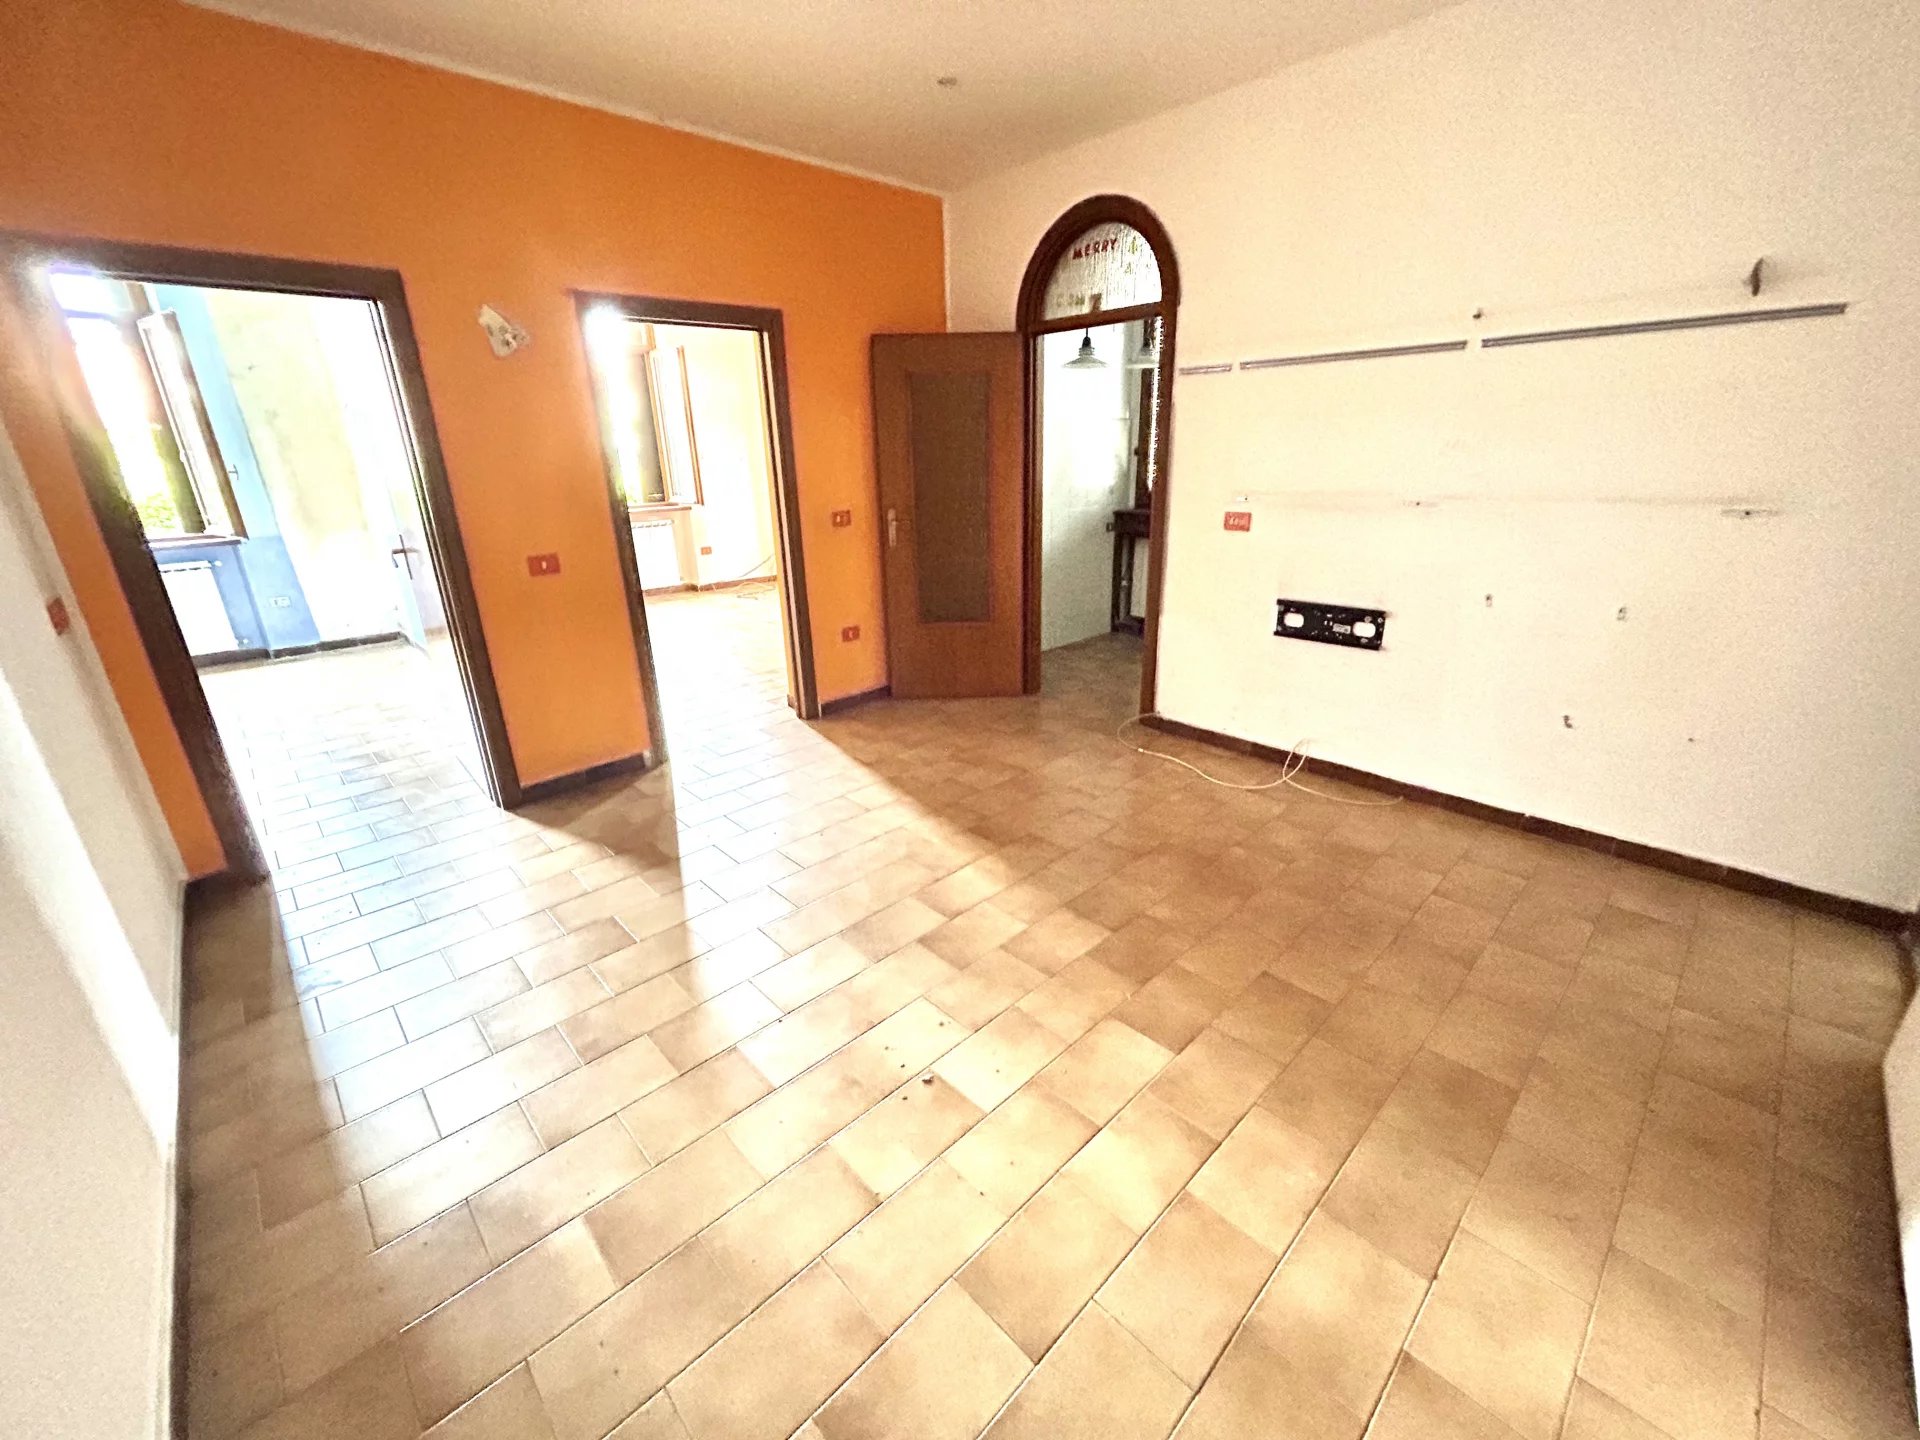 Sale Apartment - Luisago - Italy